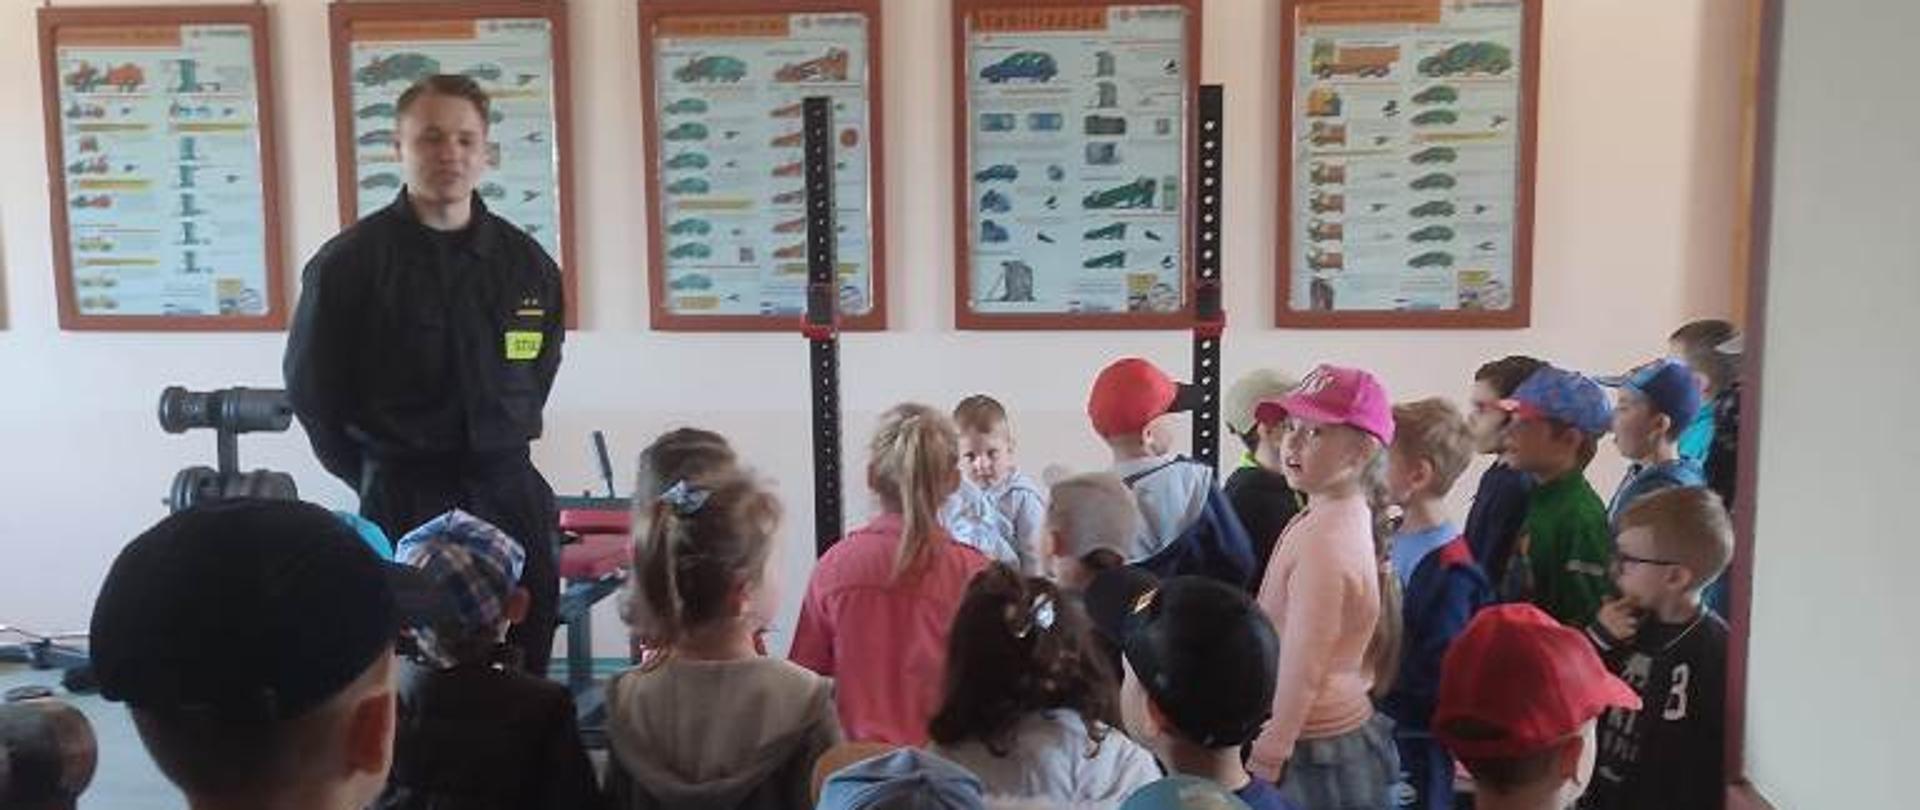 Sala ćwiczeń w JRG, dzieci oglądają wyposażenie siłowni oraz plakaty z materiałami dydaktycznymi rozwieszonymi na ścianach 